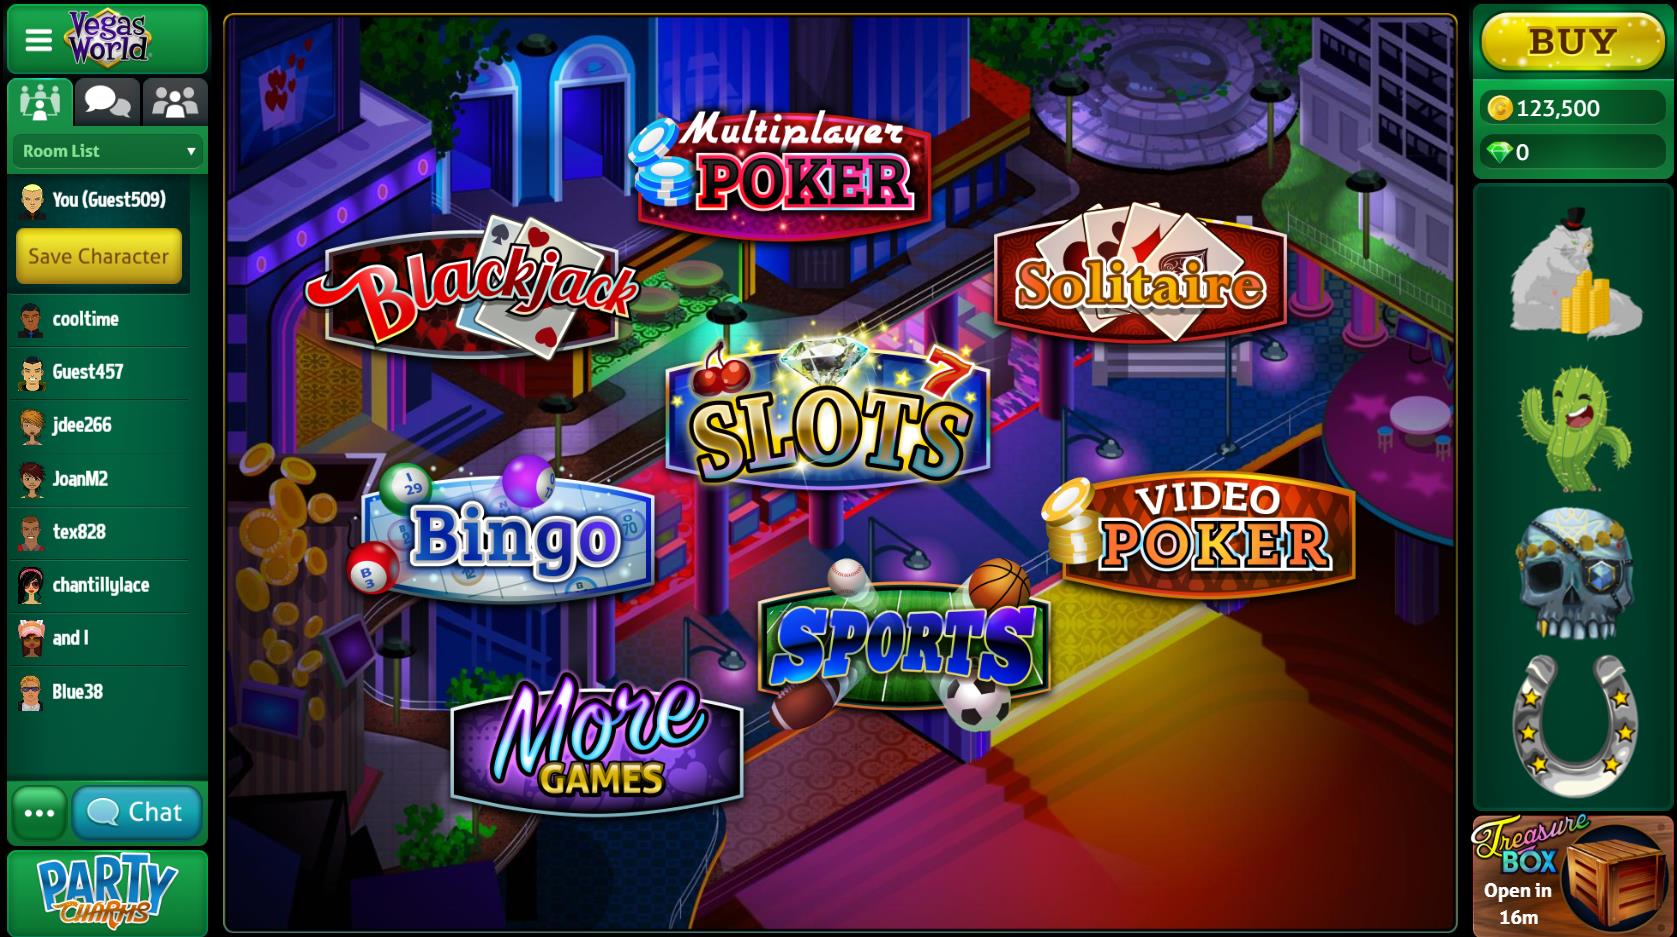 Grande vegas casino no deposit free spins no deposit